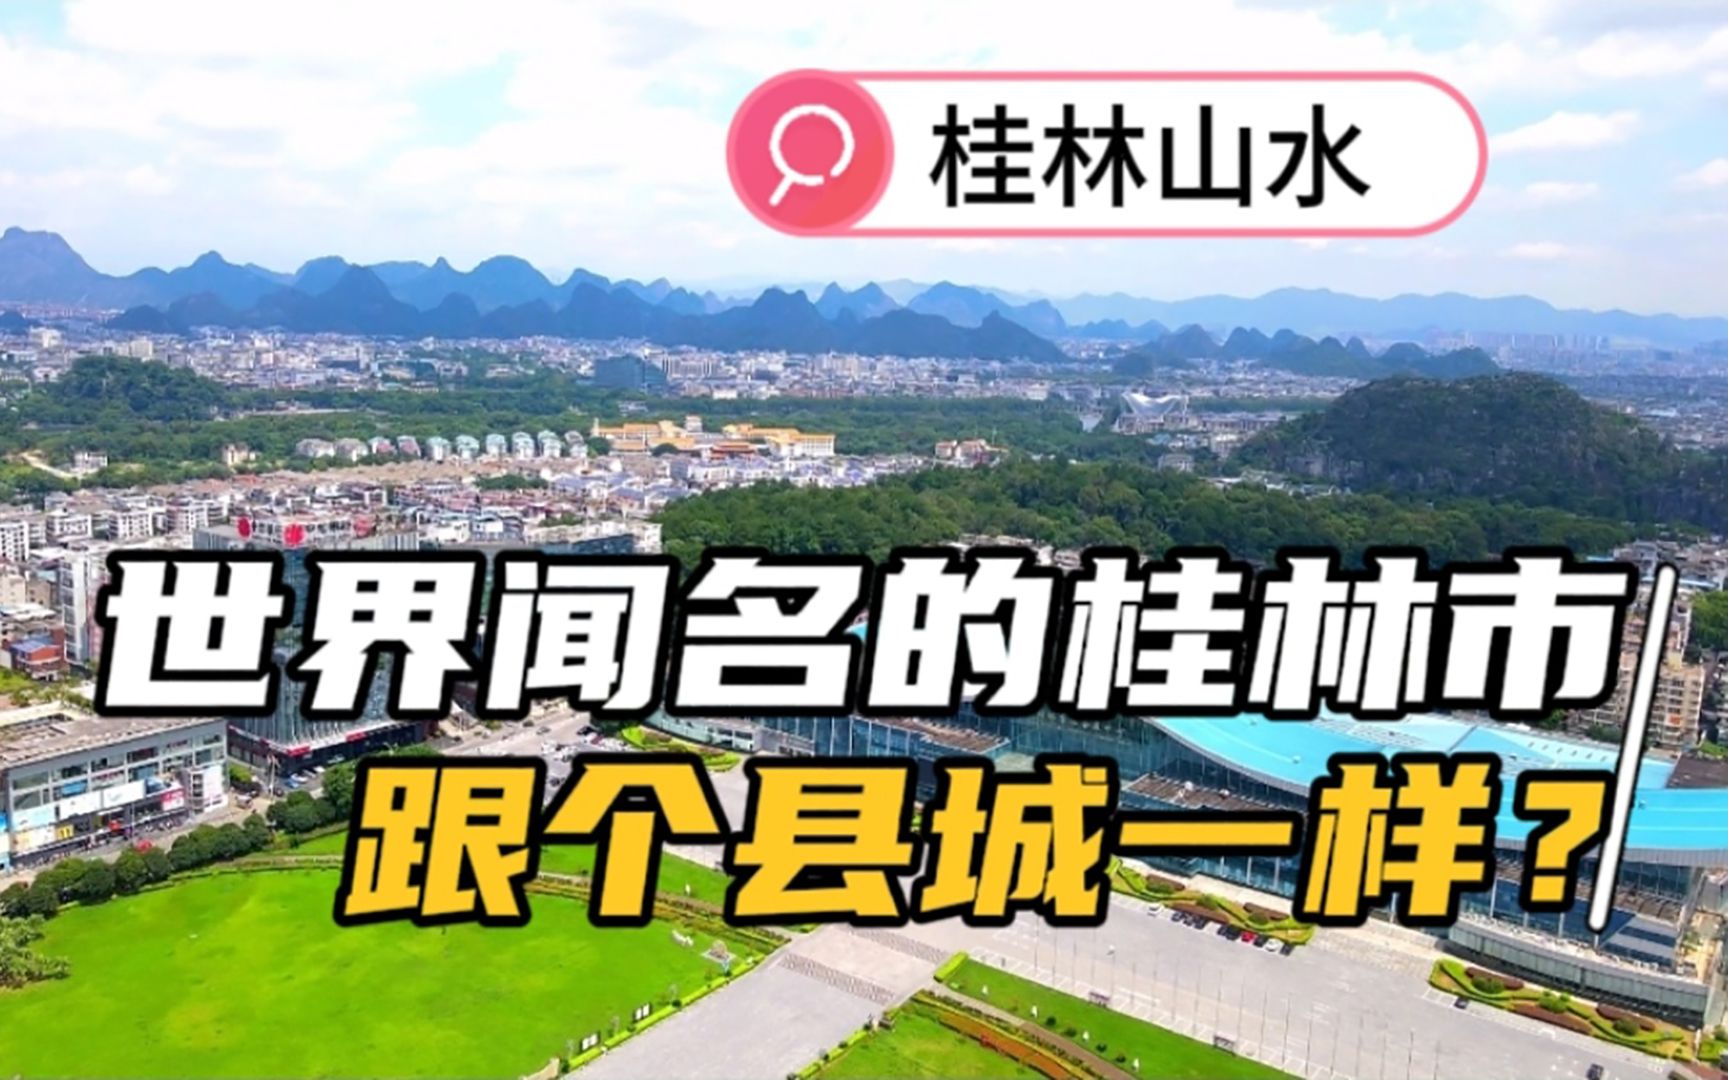 网友调侃“世界闻名的桂林市城景怎么像个县城”今天来个一镜到底看看全景